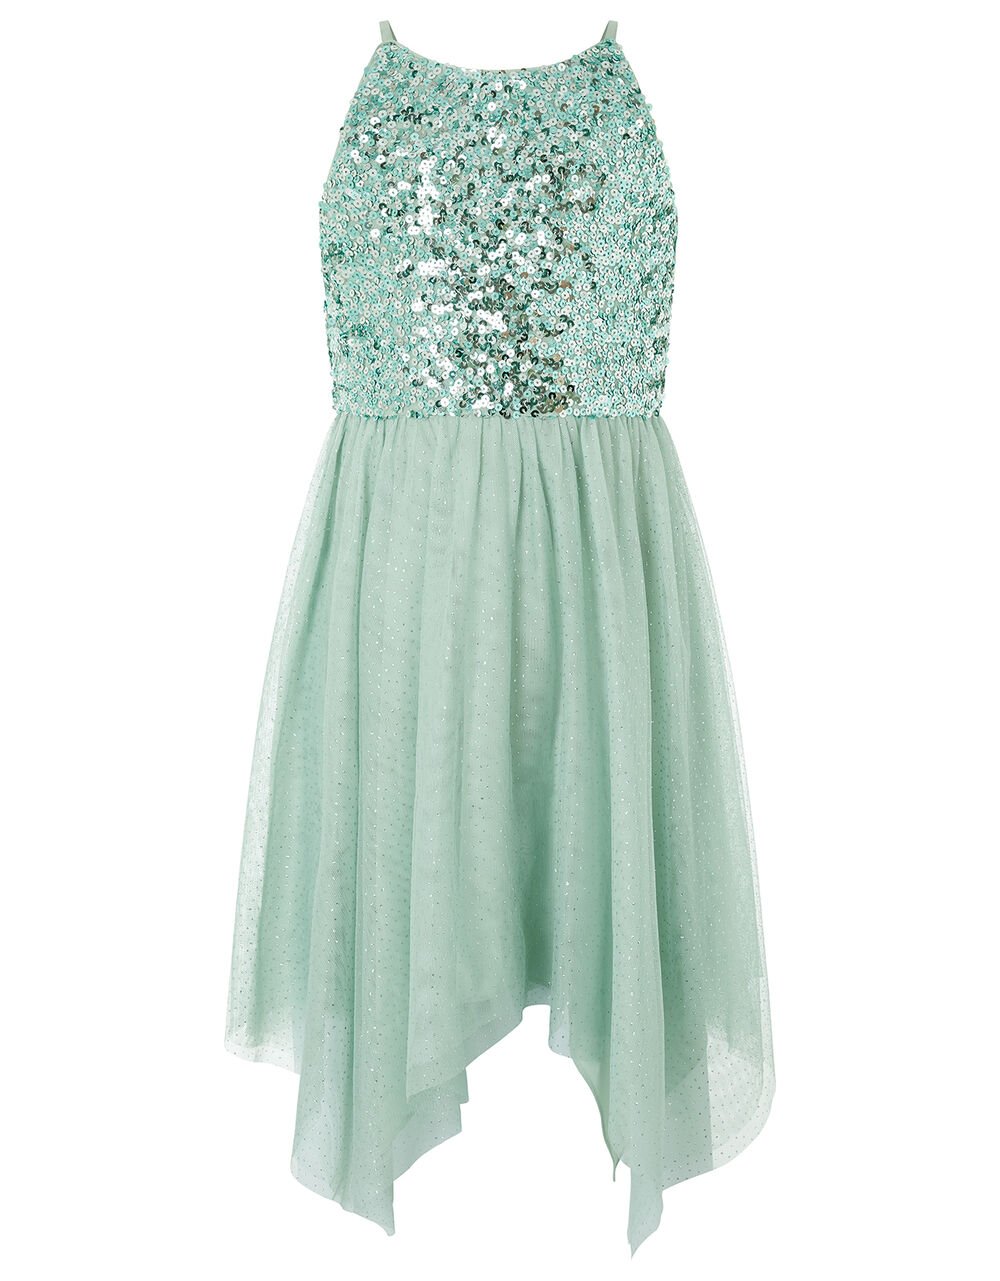 Truth Sequin Sparkle Hanky Hem Dress Green | Girls' Dresses | Monsoon UK.